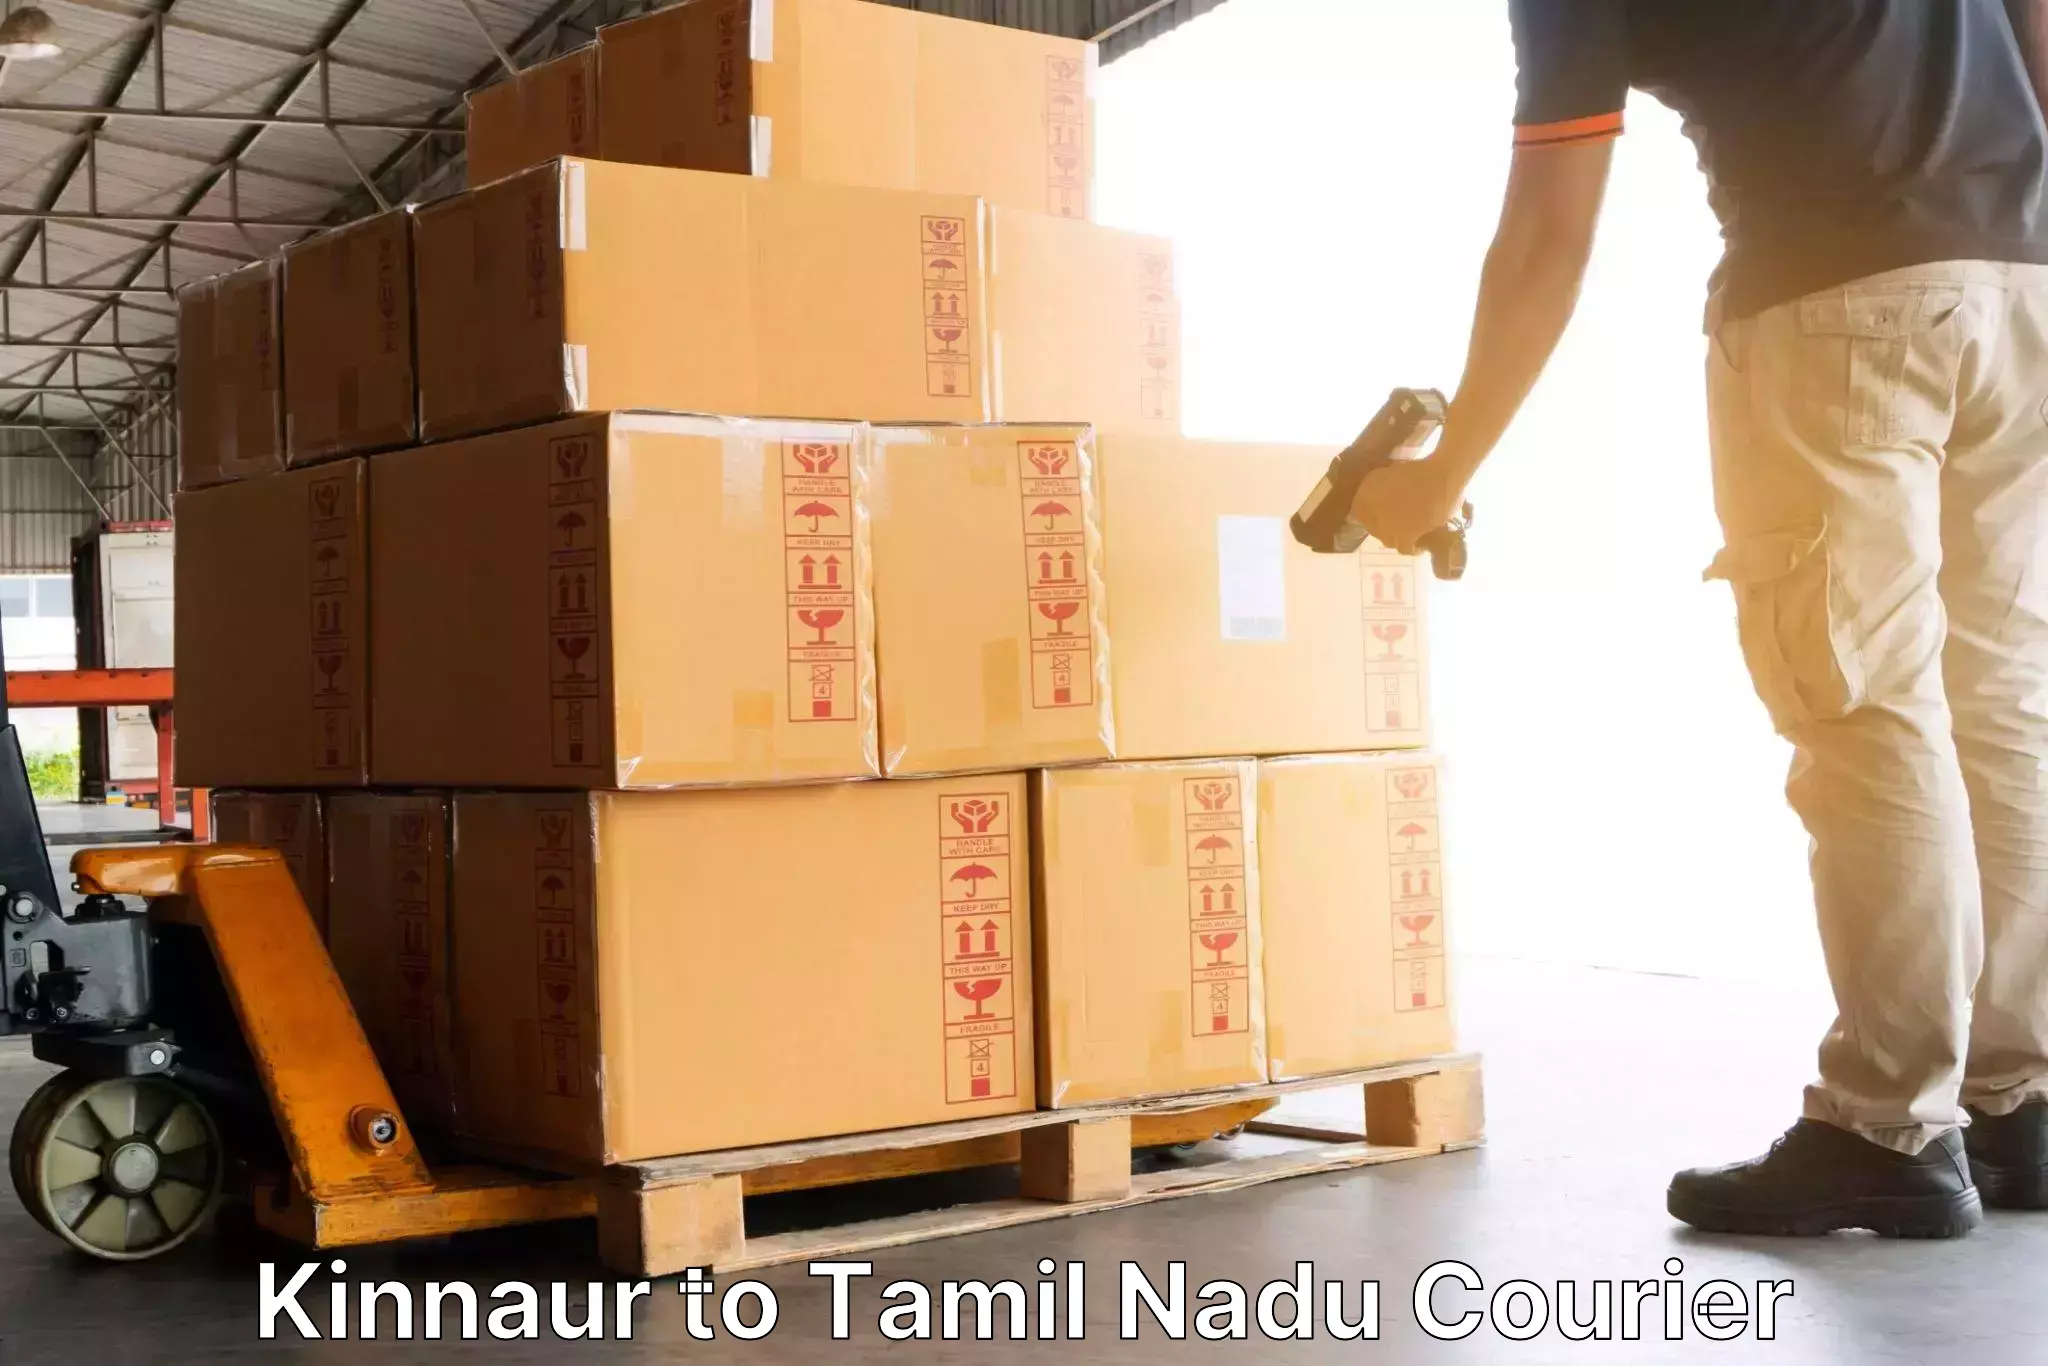 Efficient cargo handling Kinnaur to Jayankondam